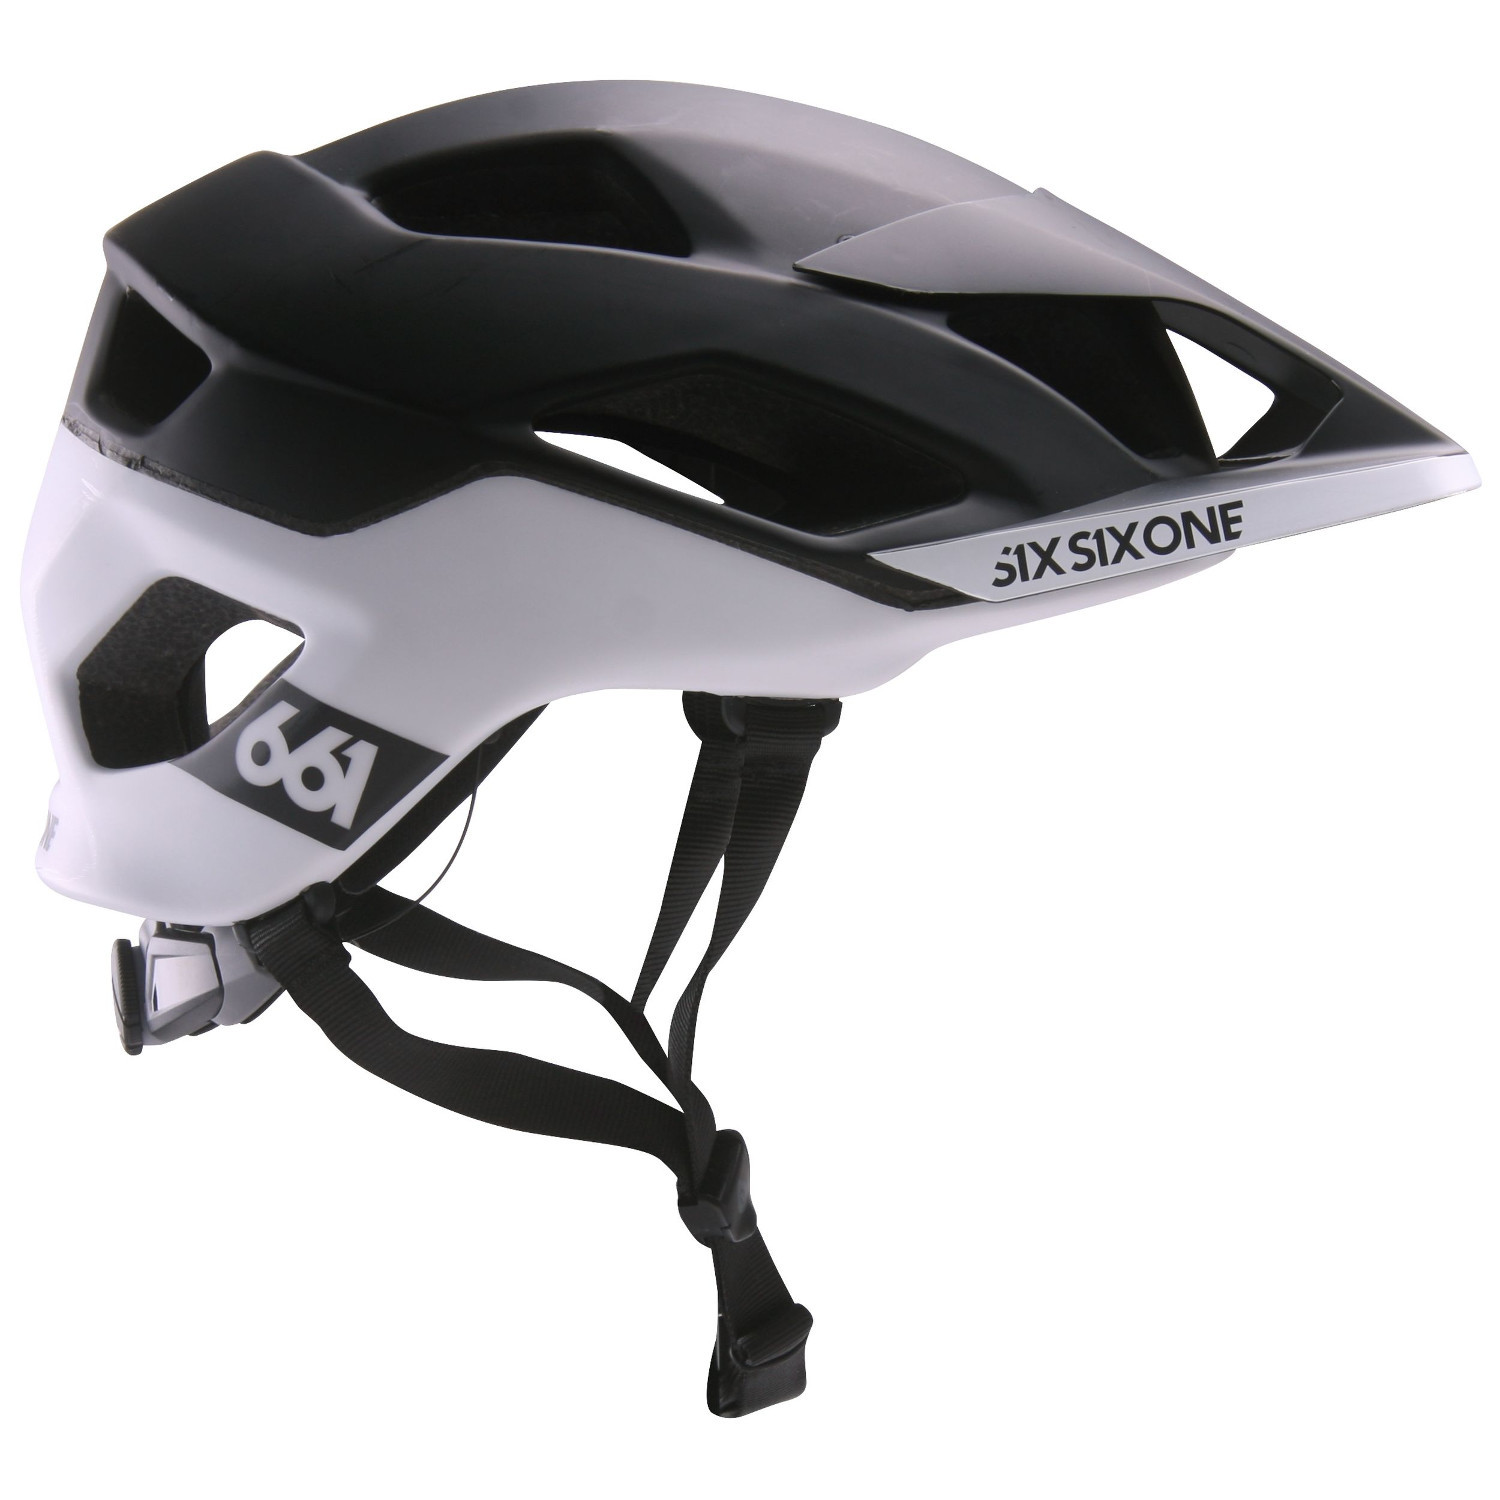 SixSixOne Enduro-MTB Helmet Evo AM Patrol Black/White